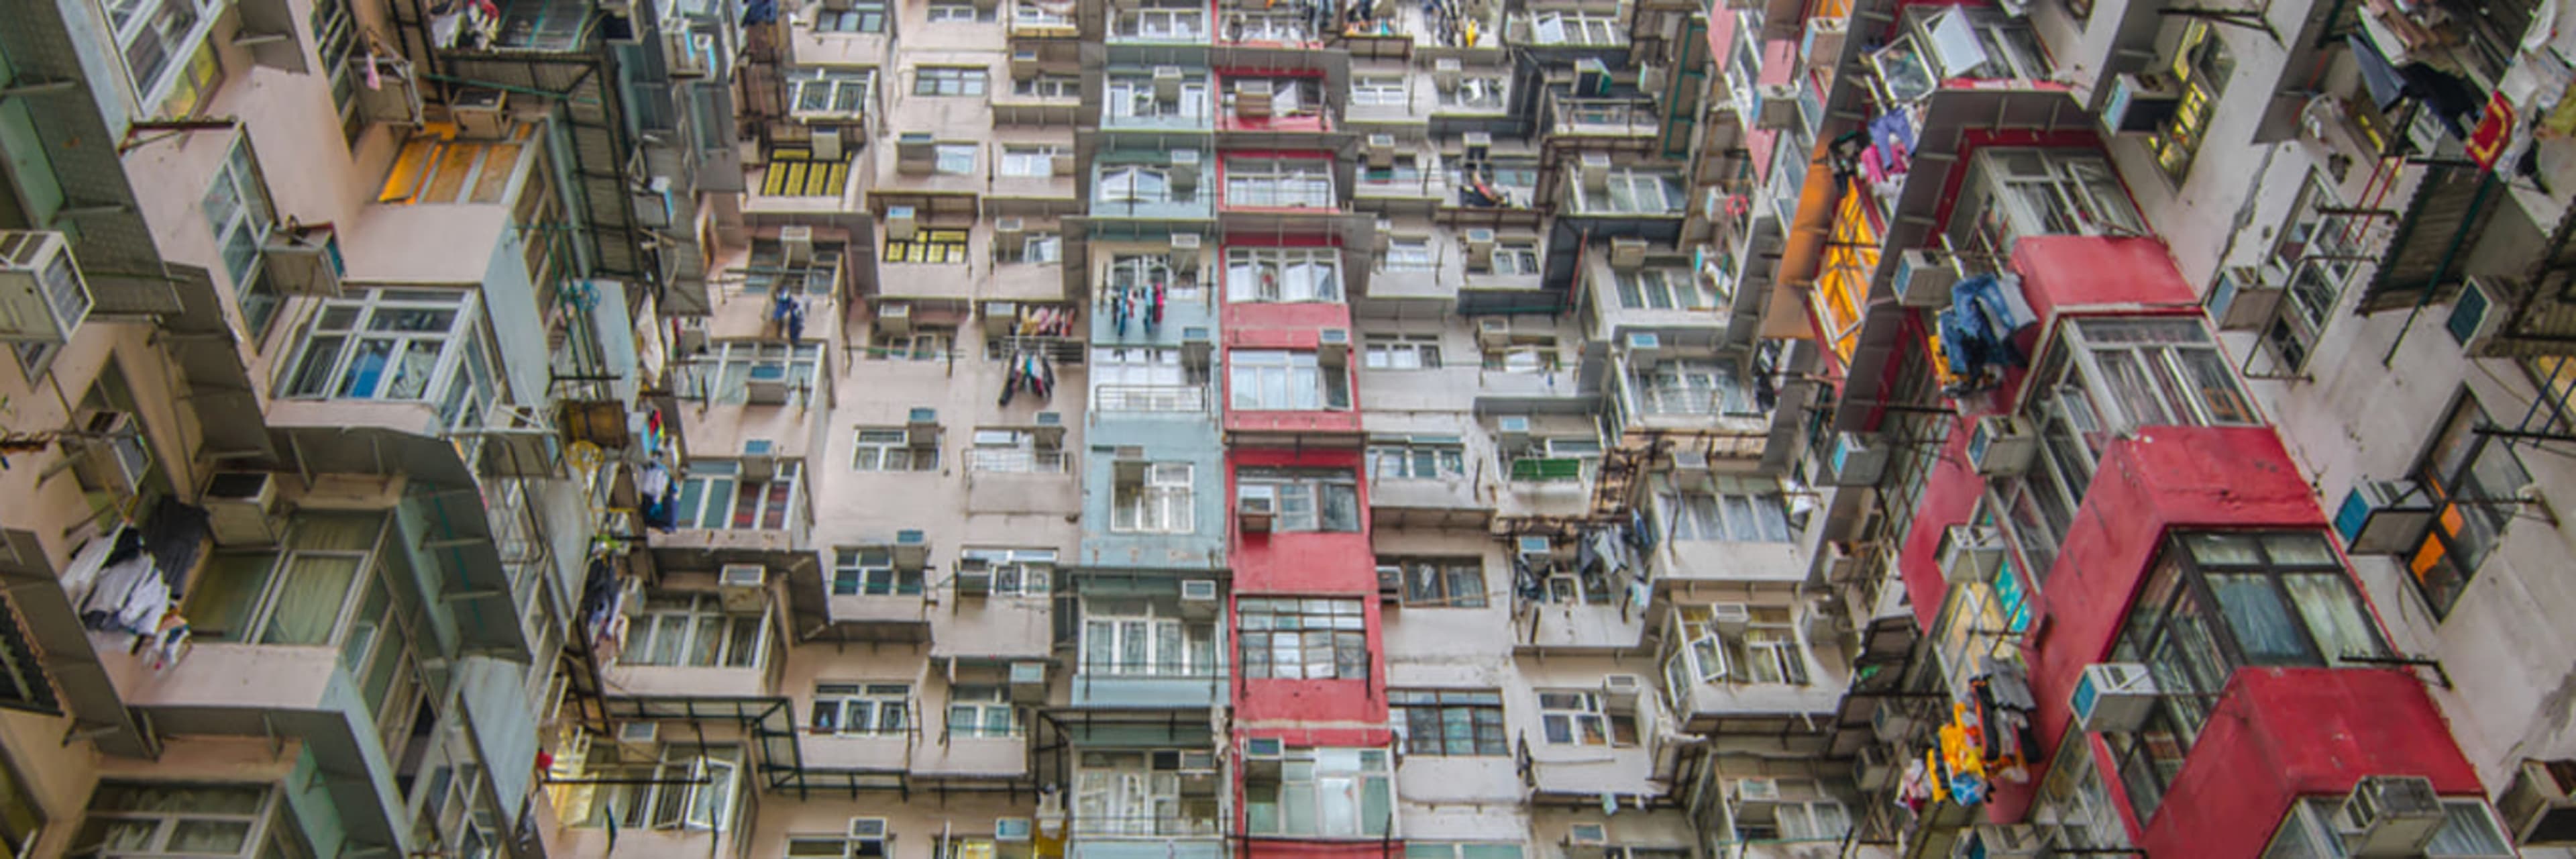 Tenement apartment block in Hong Kong.